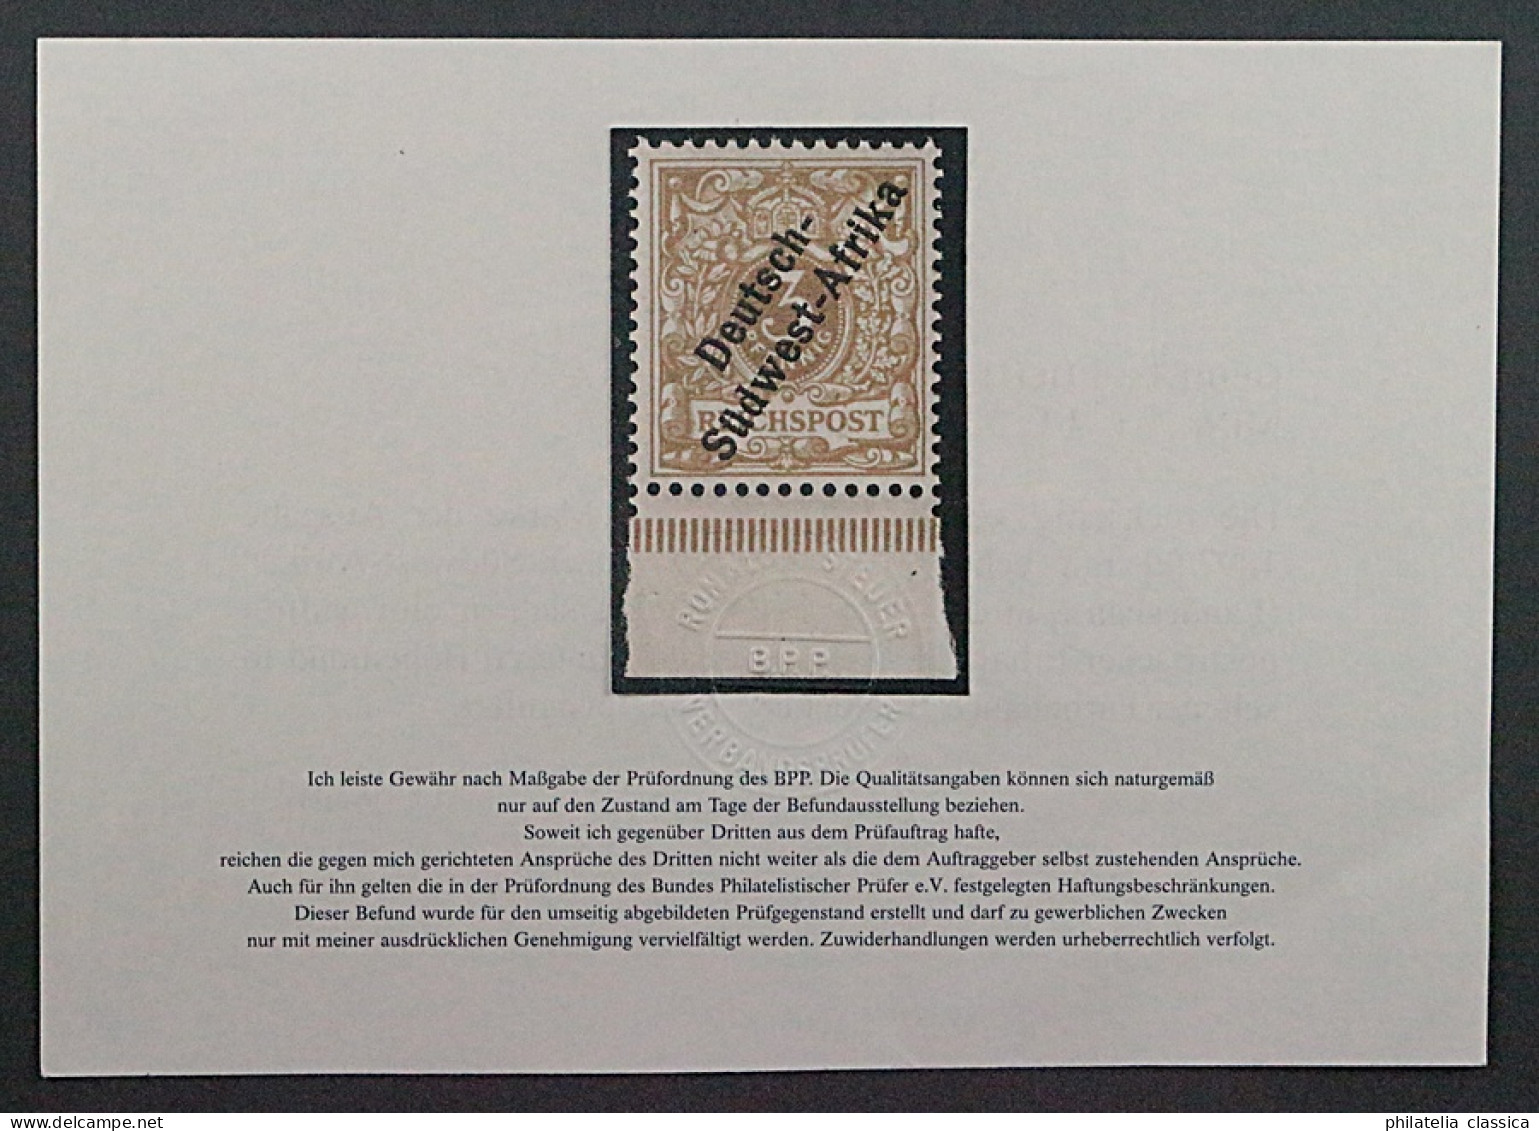 1898, DEUTSCH-SÜDWESTAFRIKA 1 F ** 3 Pfg. Hellocker, Postfrisch, Geprüft 900,-€ - Duits-Zuidwest-Afrika